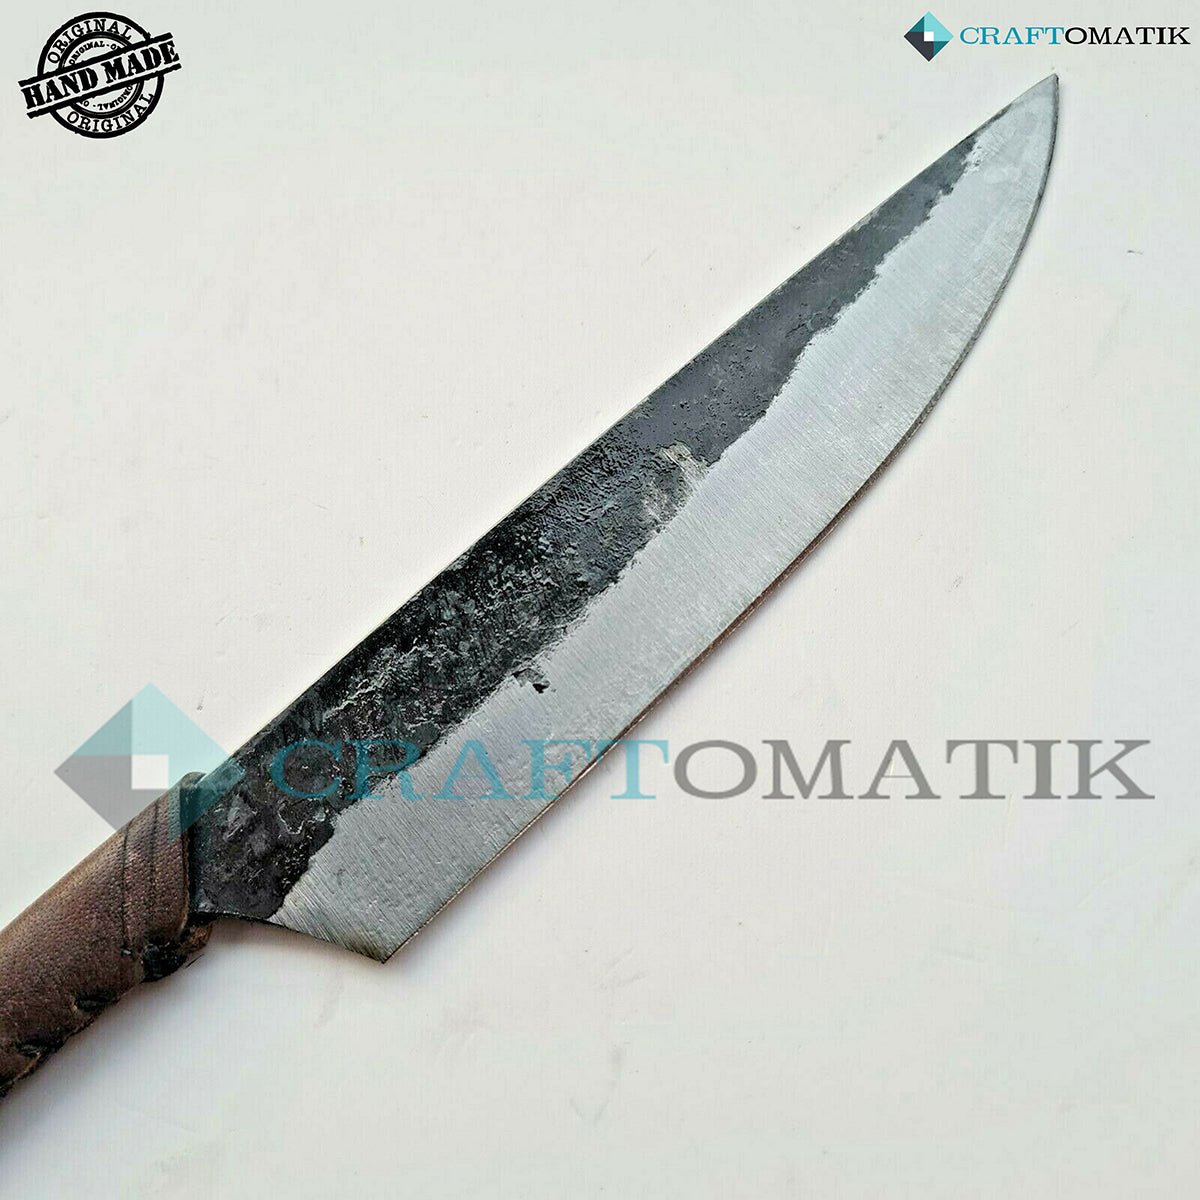 Keltisches Messer - IV